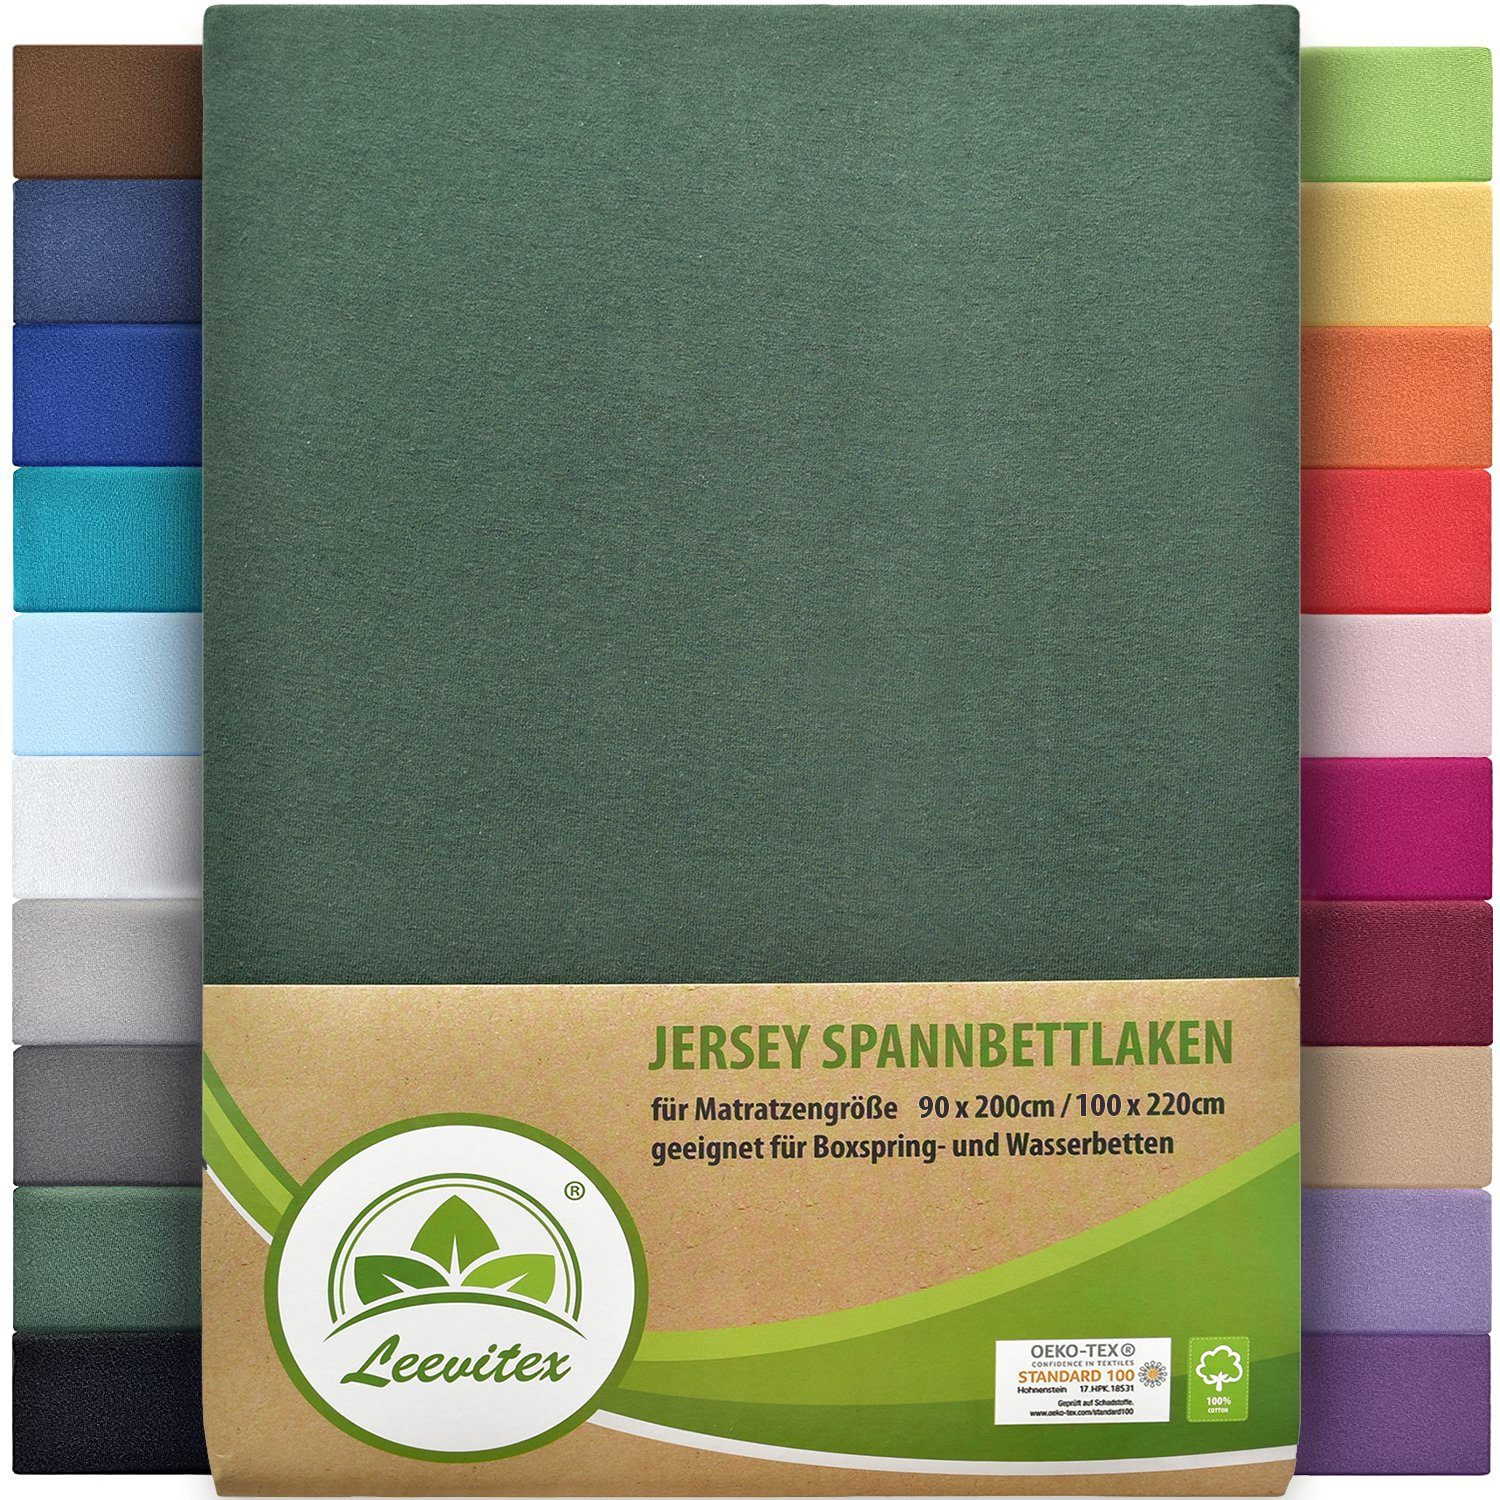 Spannbettlaken Premium 170, leevitex®, Gummizug: rundum, schwer und dick, 100% Jersey-Baumwolle, auch Boxspringbett geeignet Dunkelgrün / Tannengrün